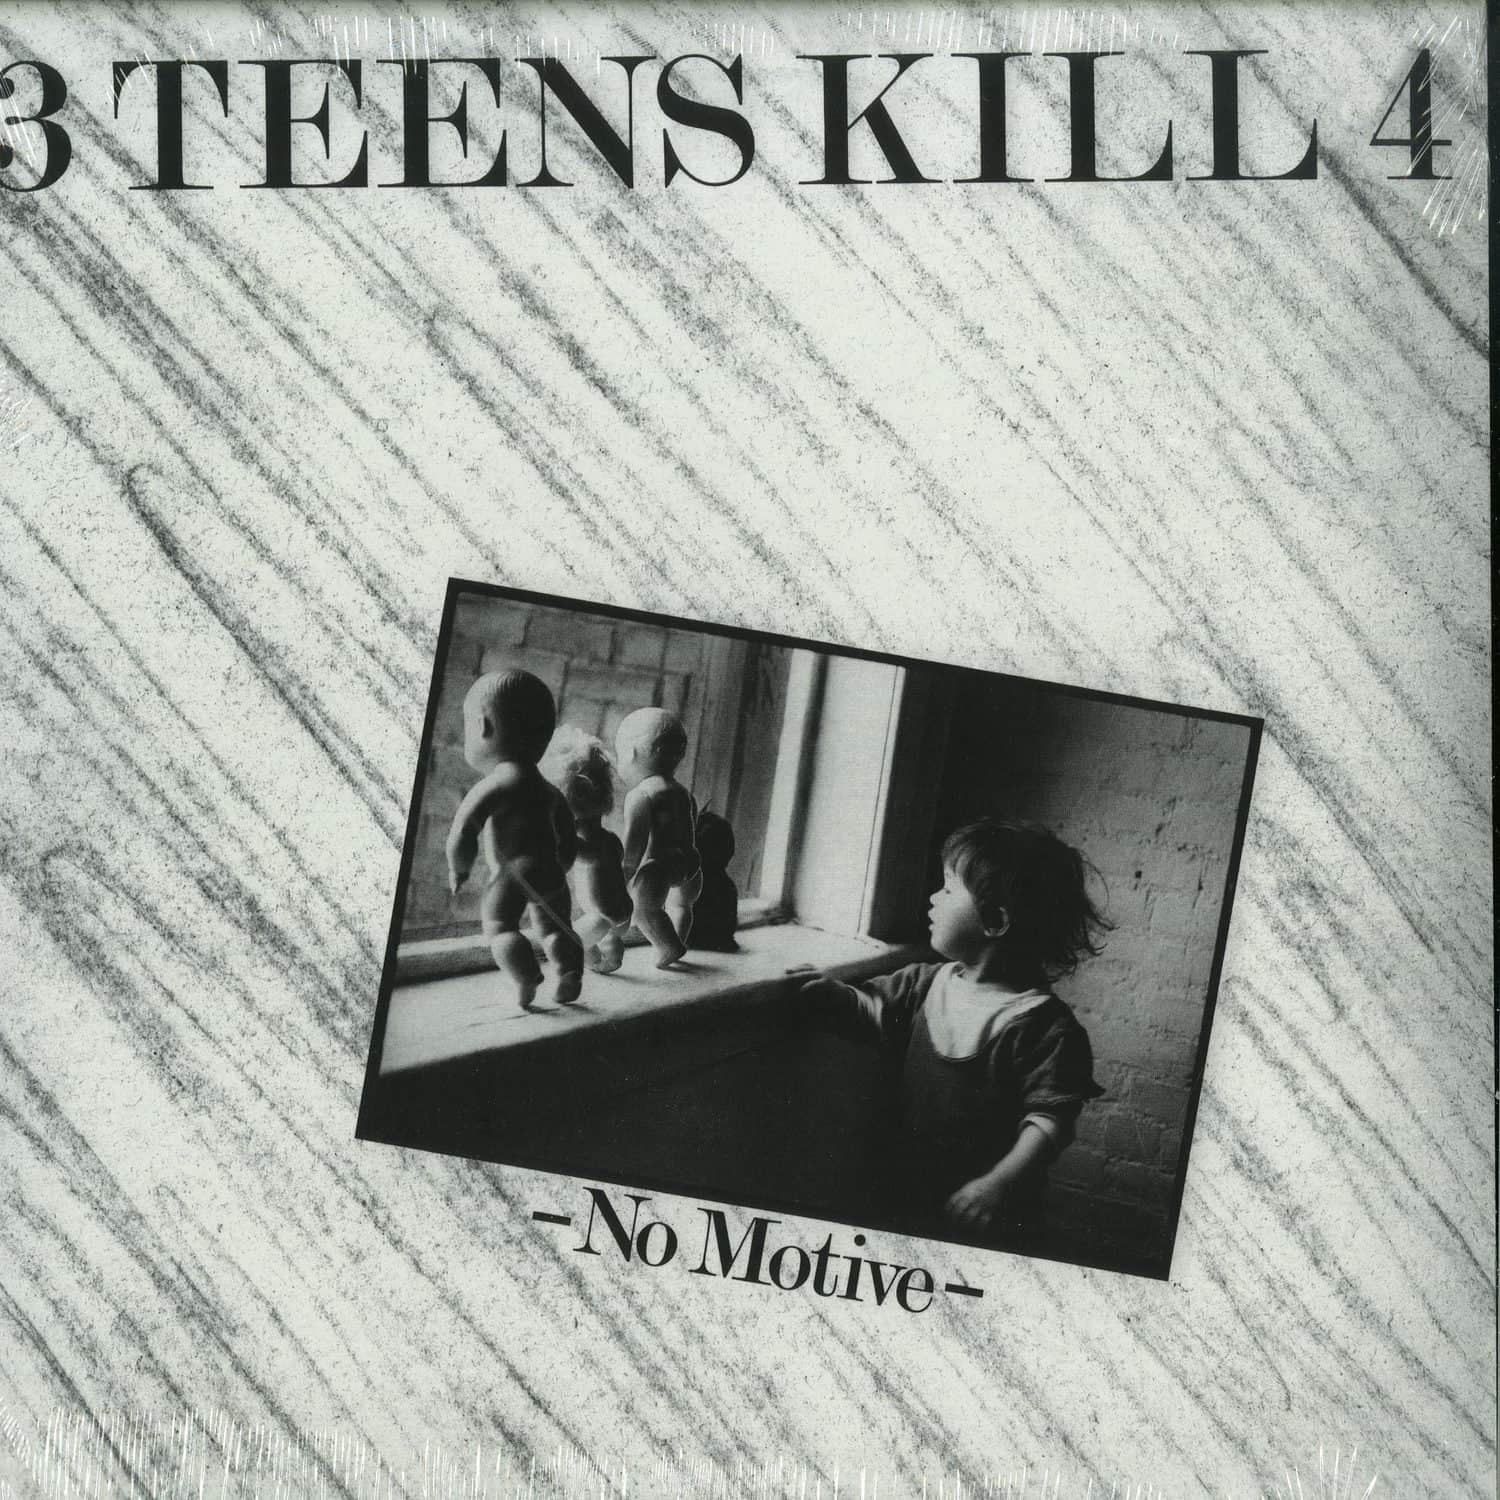 3 Teens Kill 4 - NO MOTIVE 